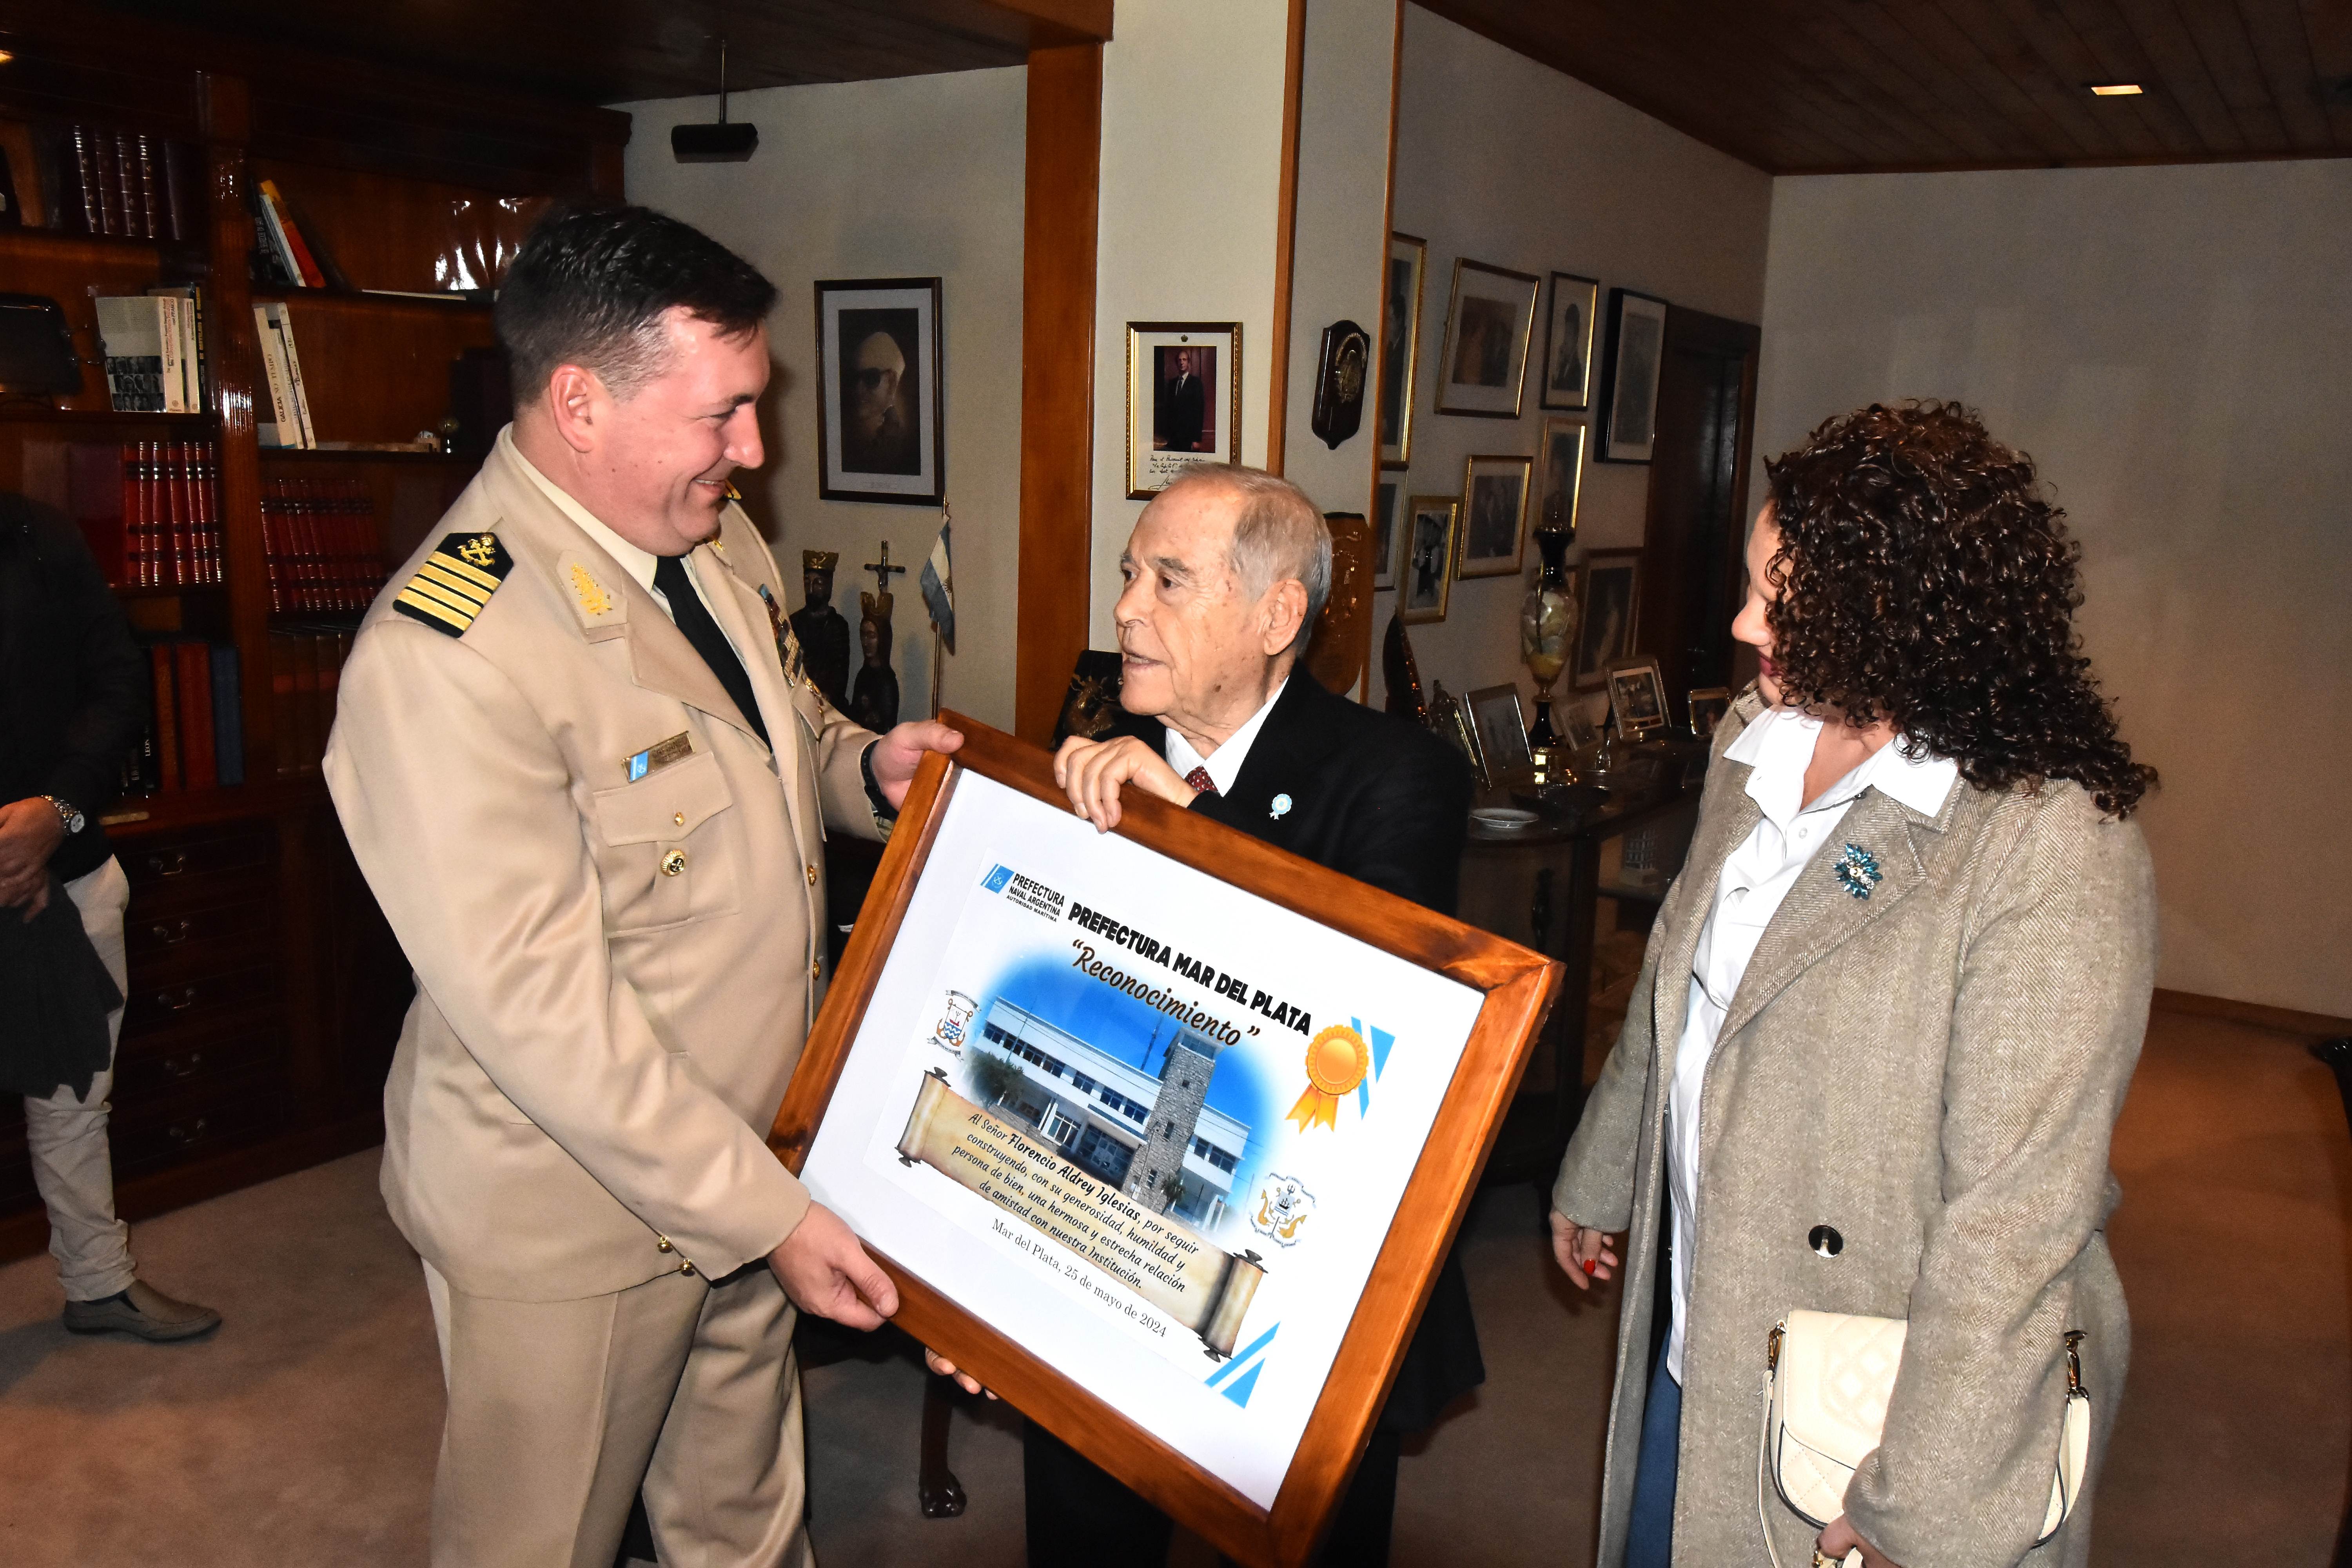  El jefe de la Prefectura Mar del Plata, prefecto mayor Rodolfo Cattaneo, y su esposa Claudia llegaron con dos regalos: un cuadro y una distinción para Aldrey que será entregada en julio.